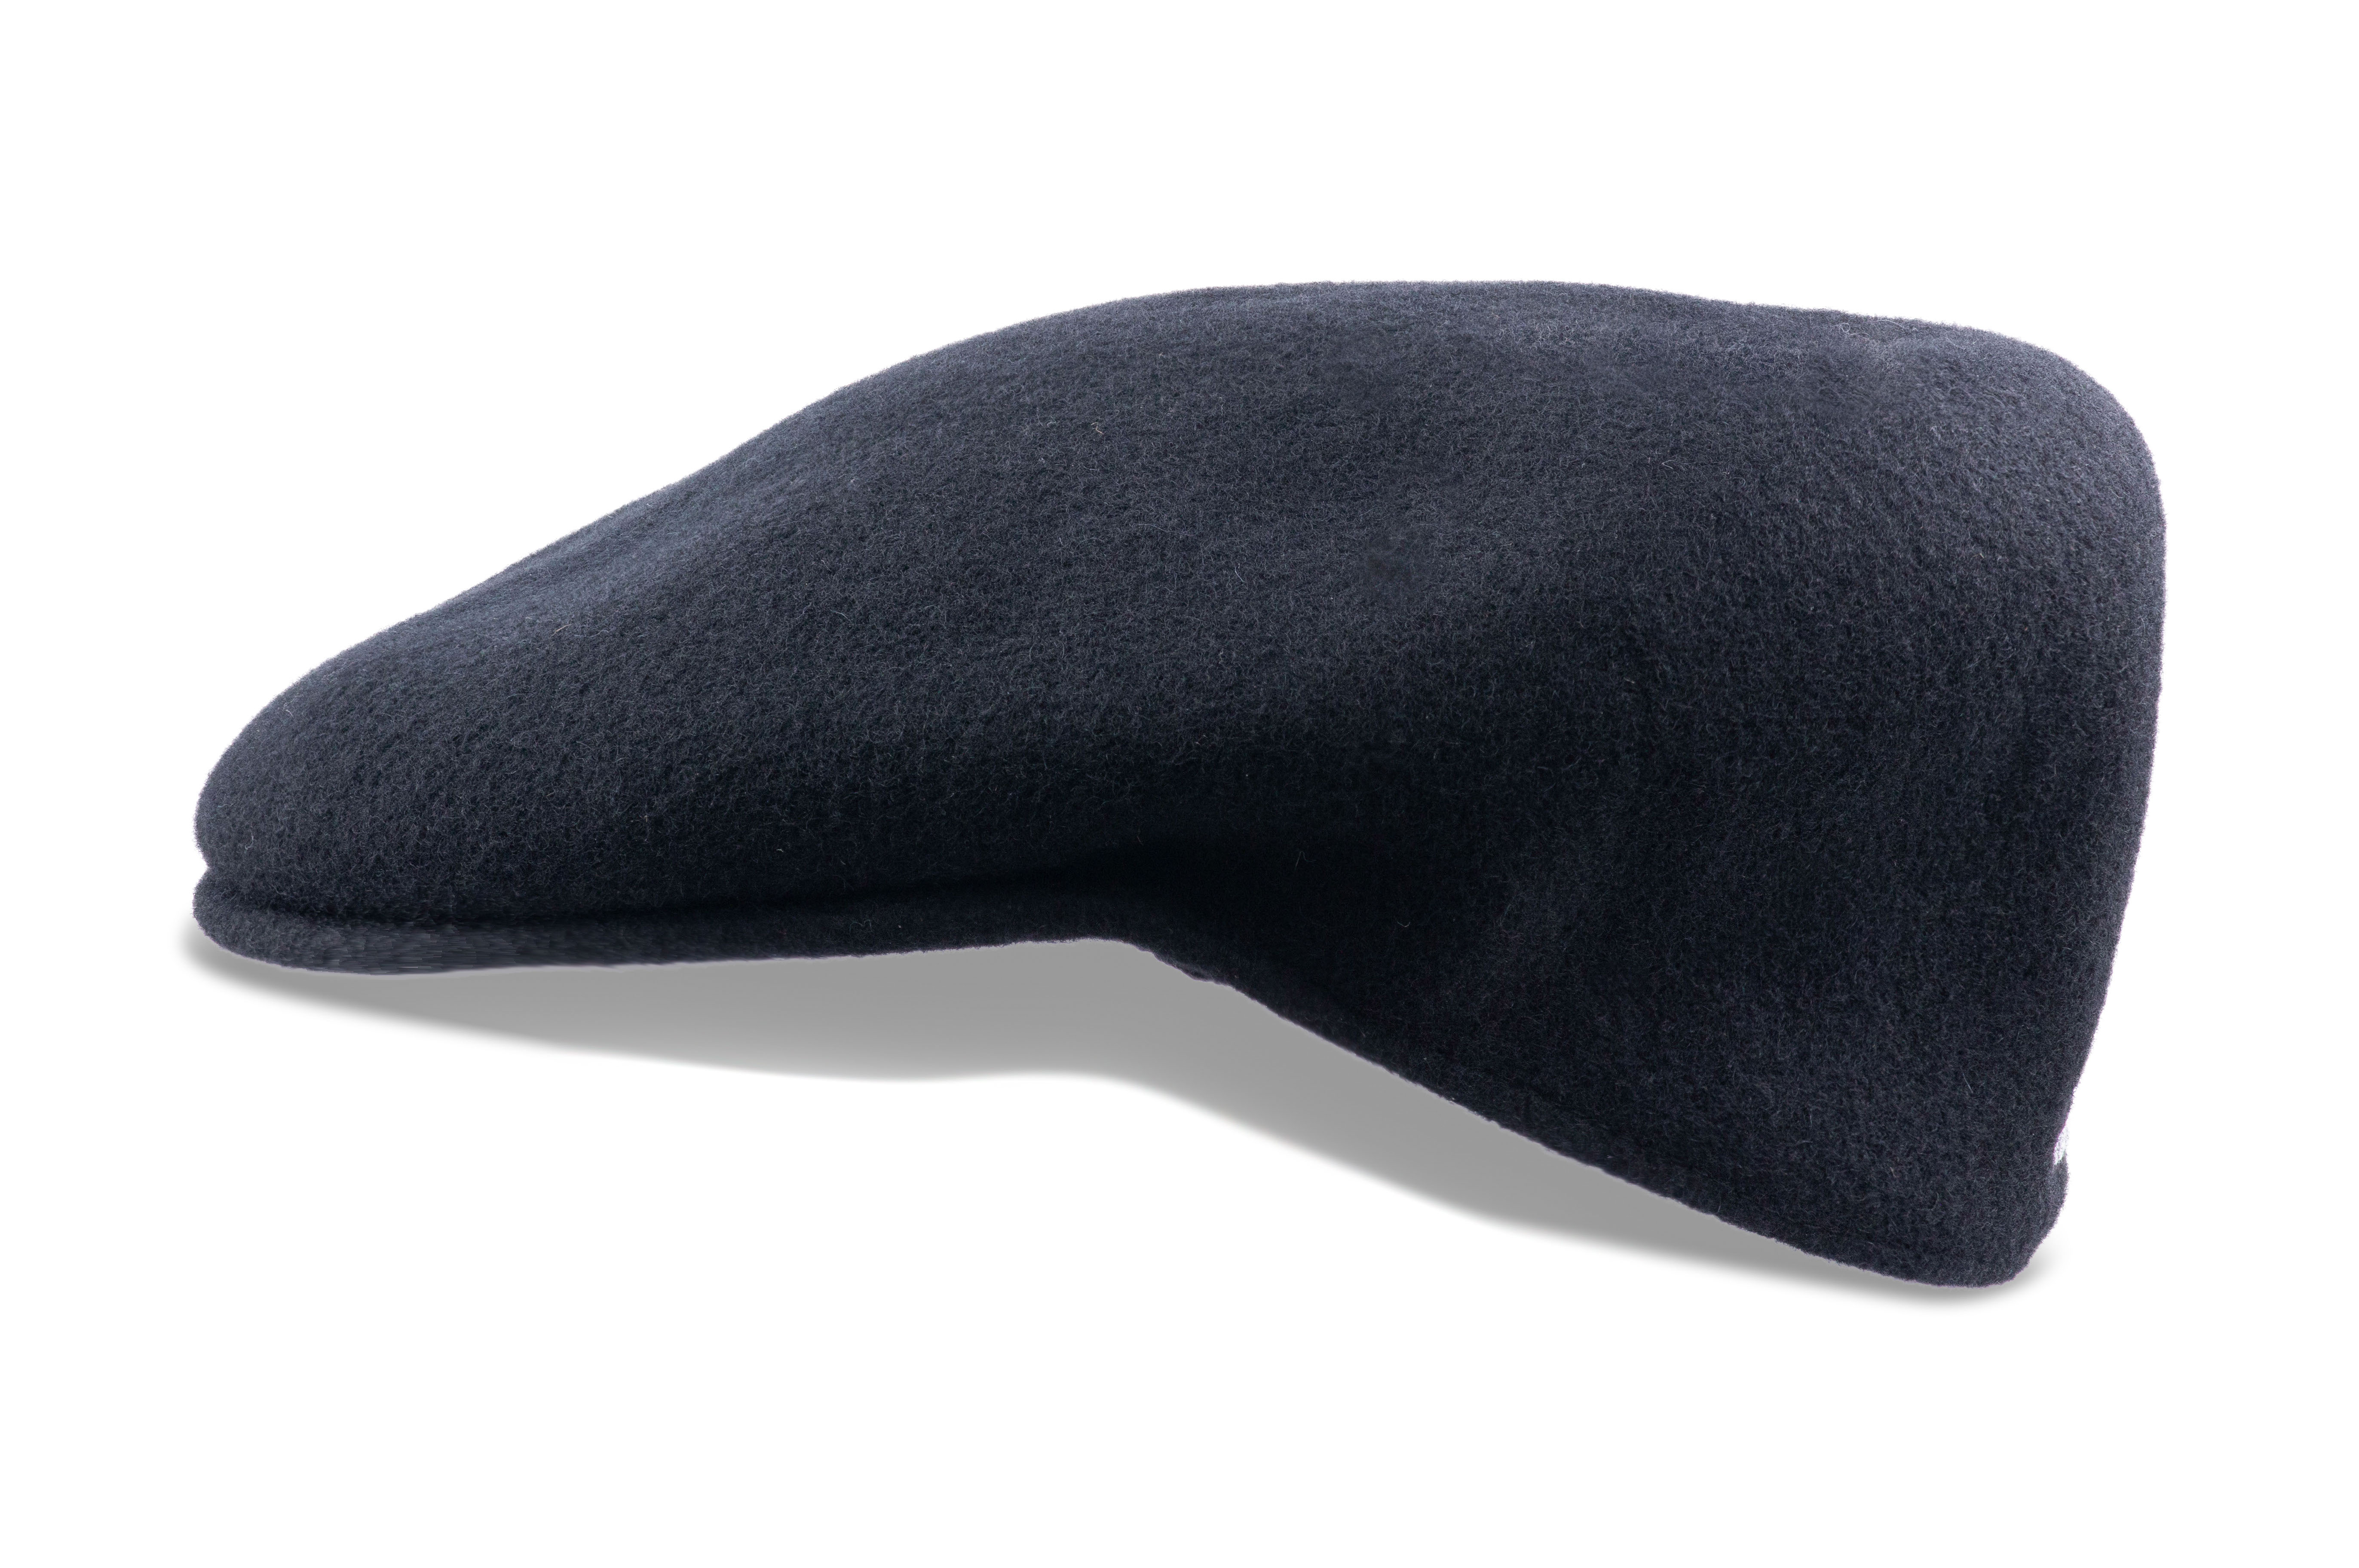 Kangol 504 Wool Felt Hat for Men and Women - Black - M